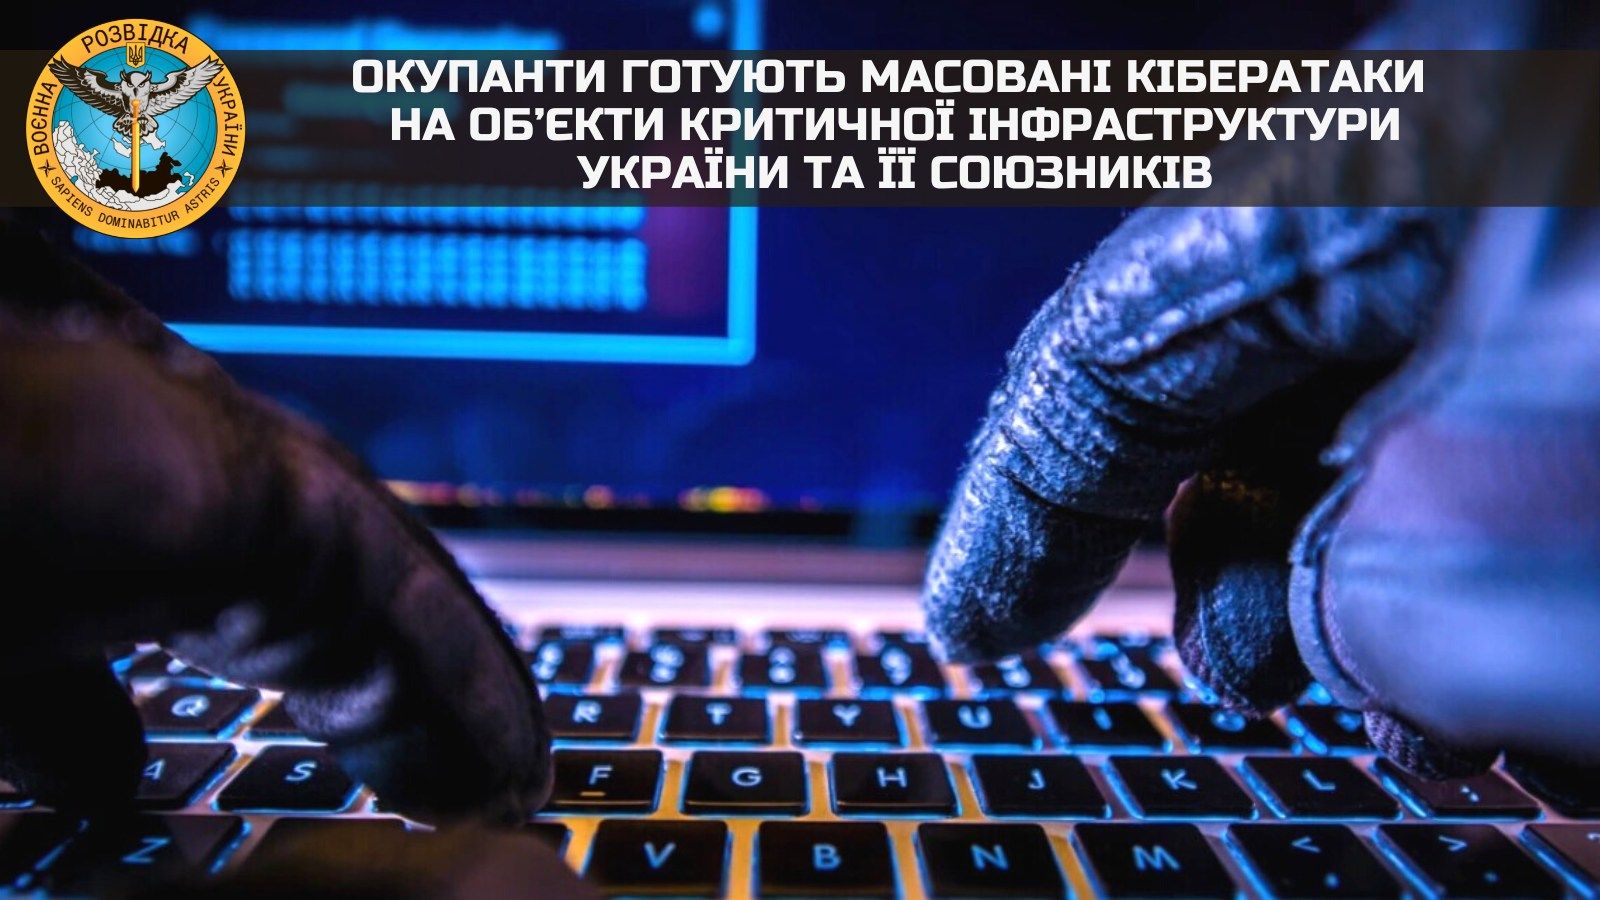 ГУР попереджає про масовані кібератаки на об’єкти критичної інфраструктури